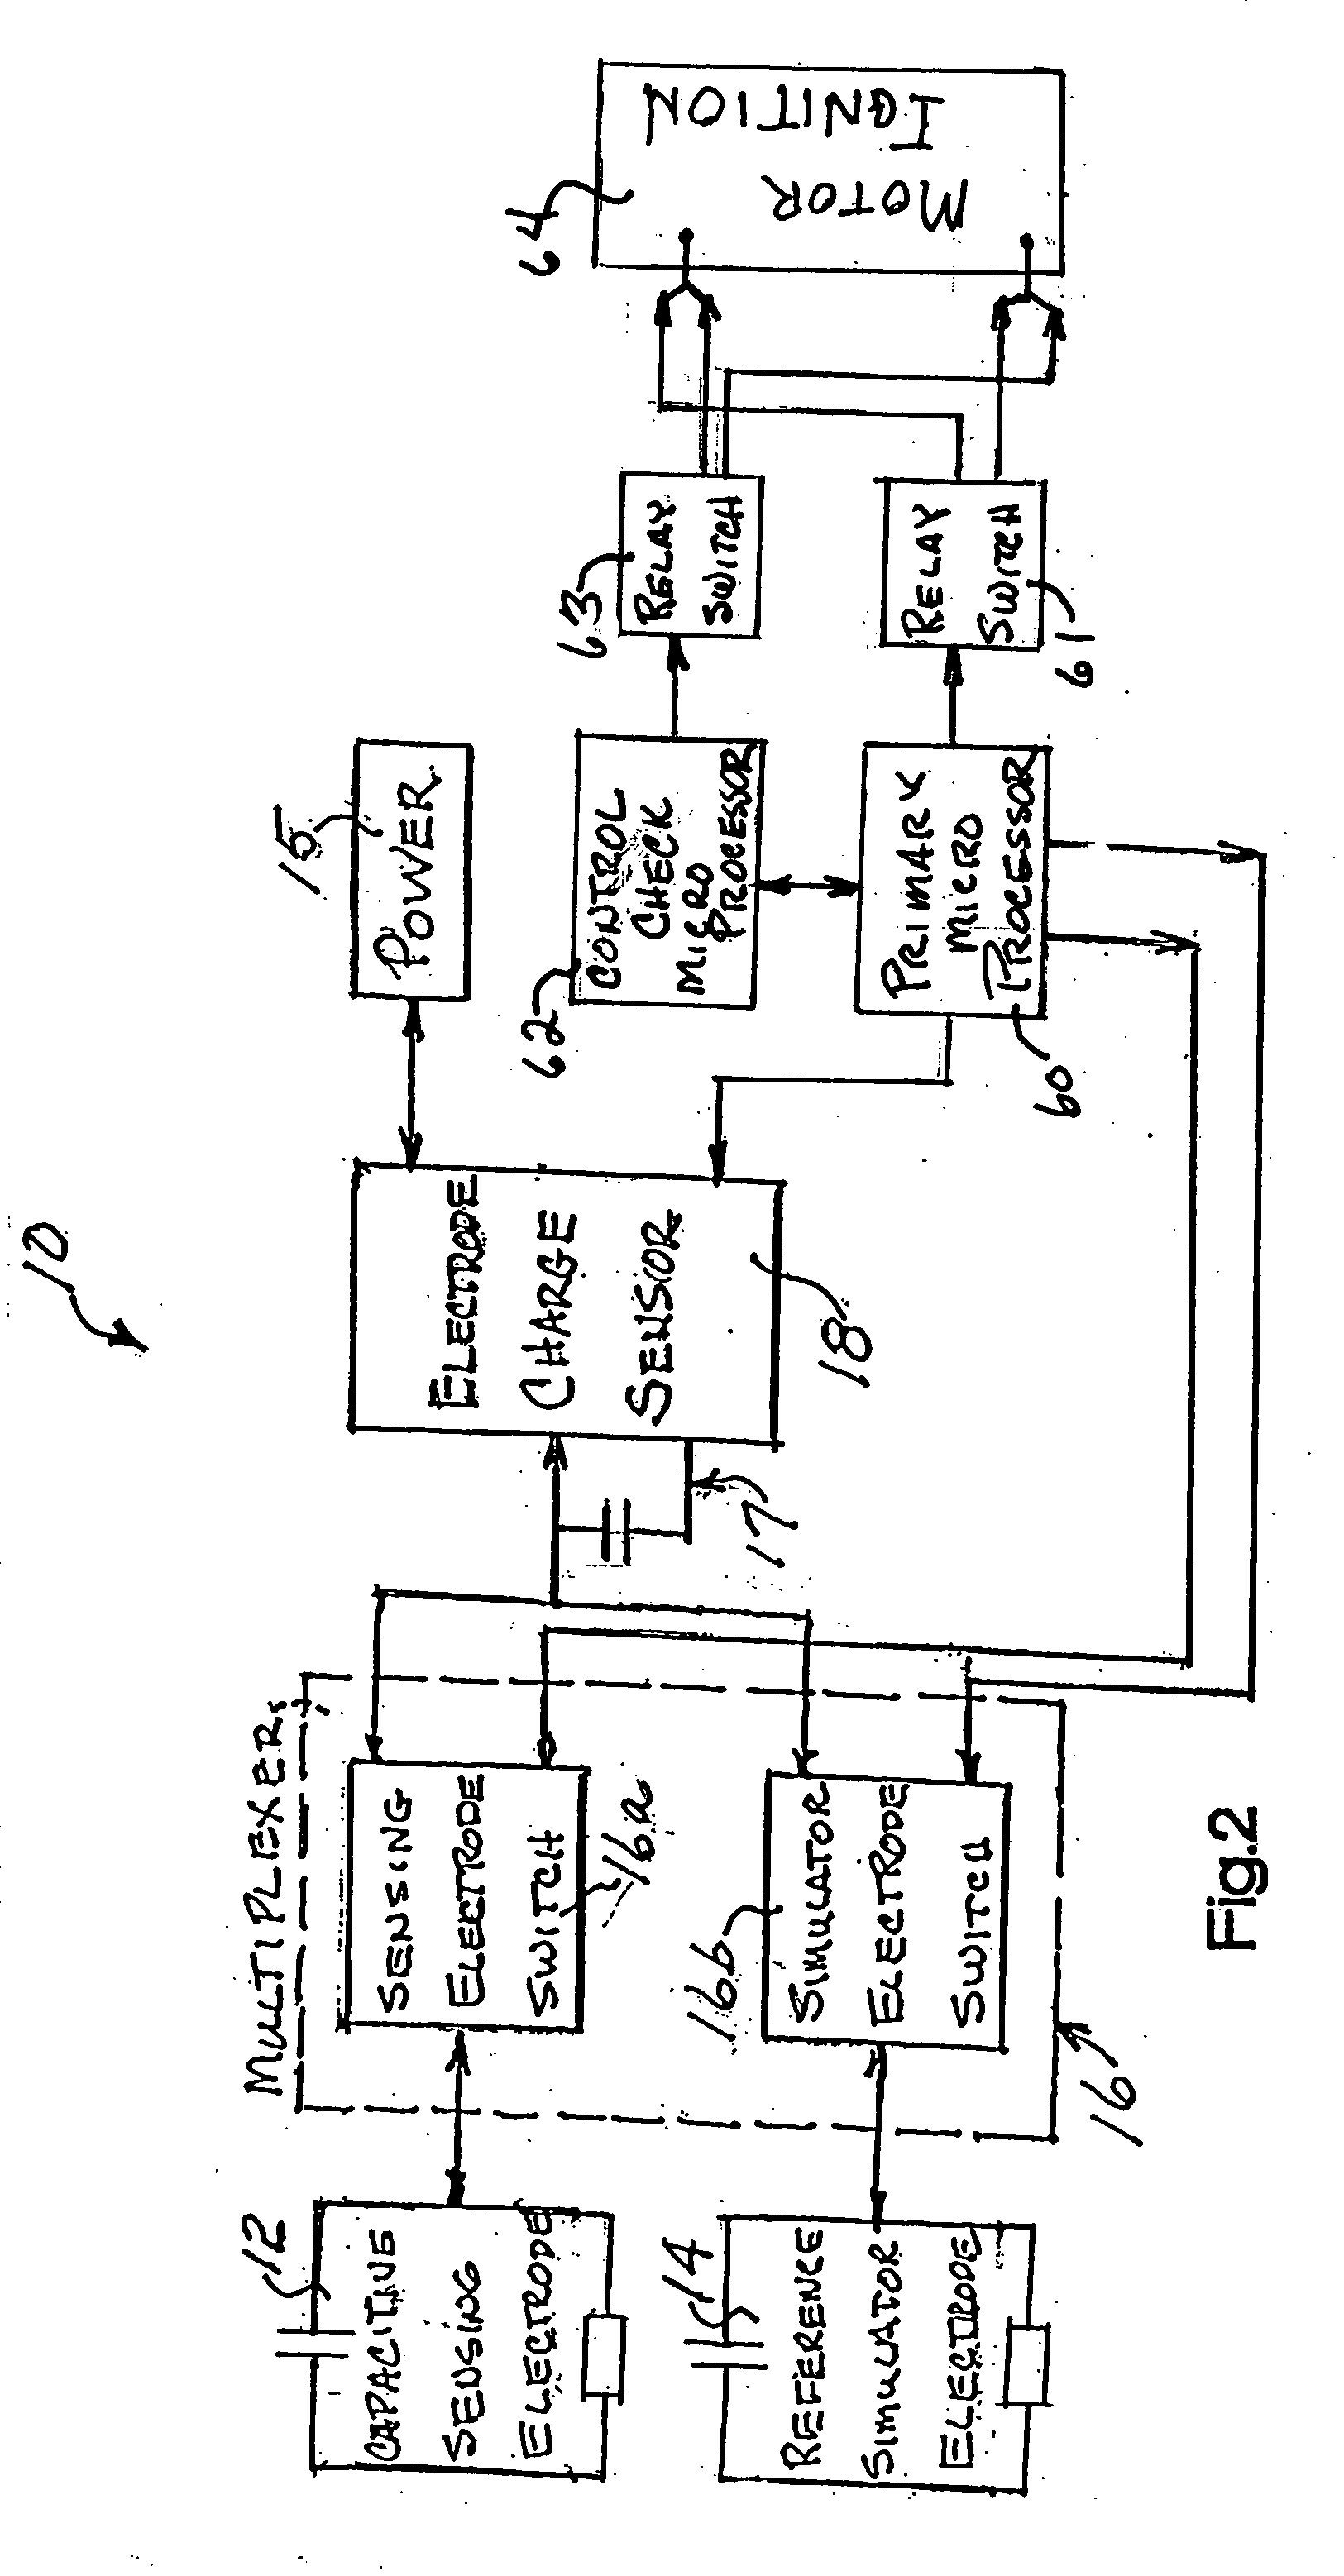 Operator sensing circuit for disabling motor of power equipment